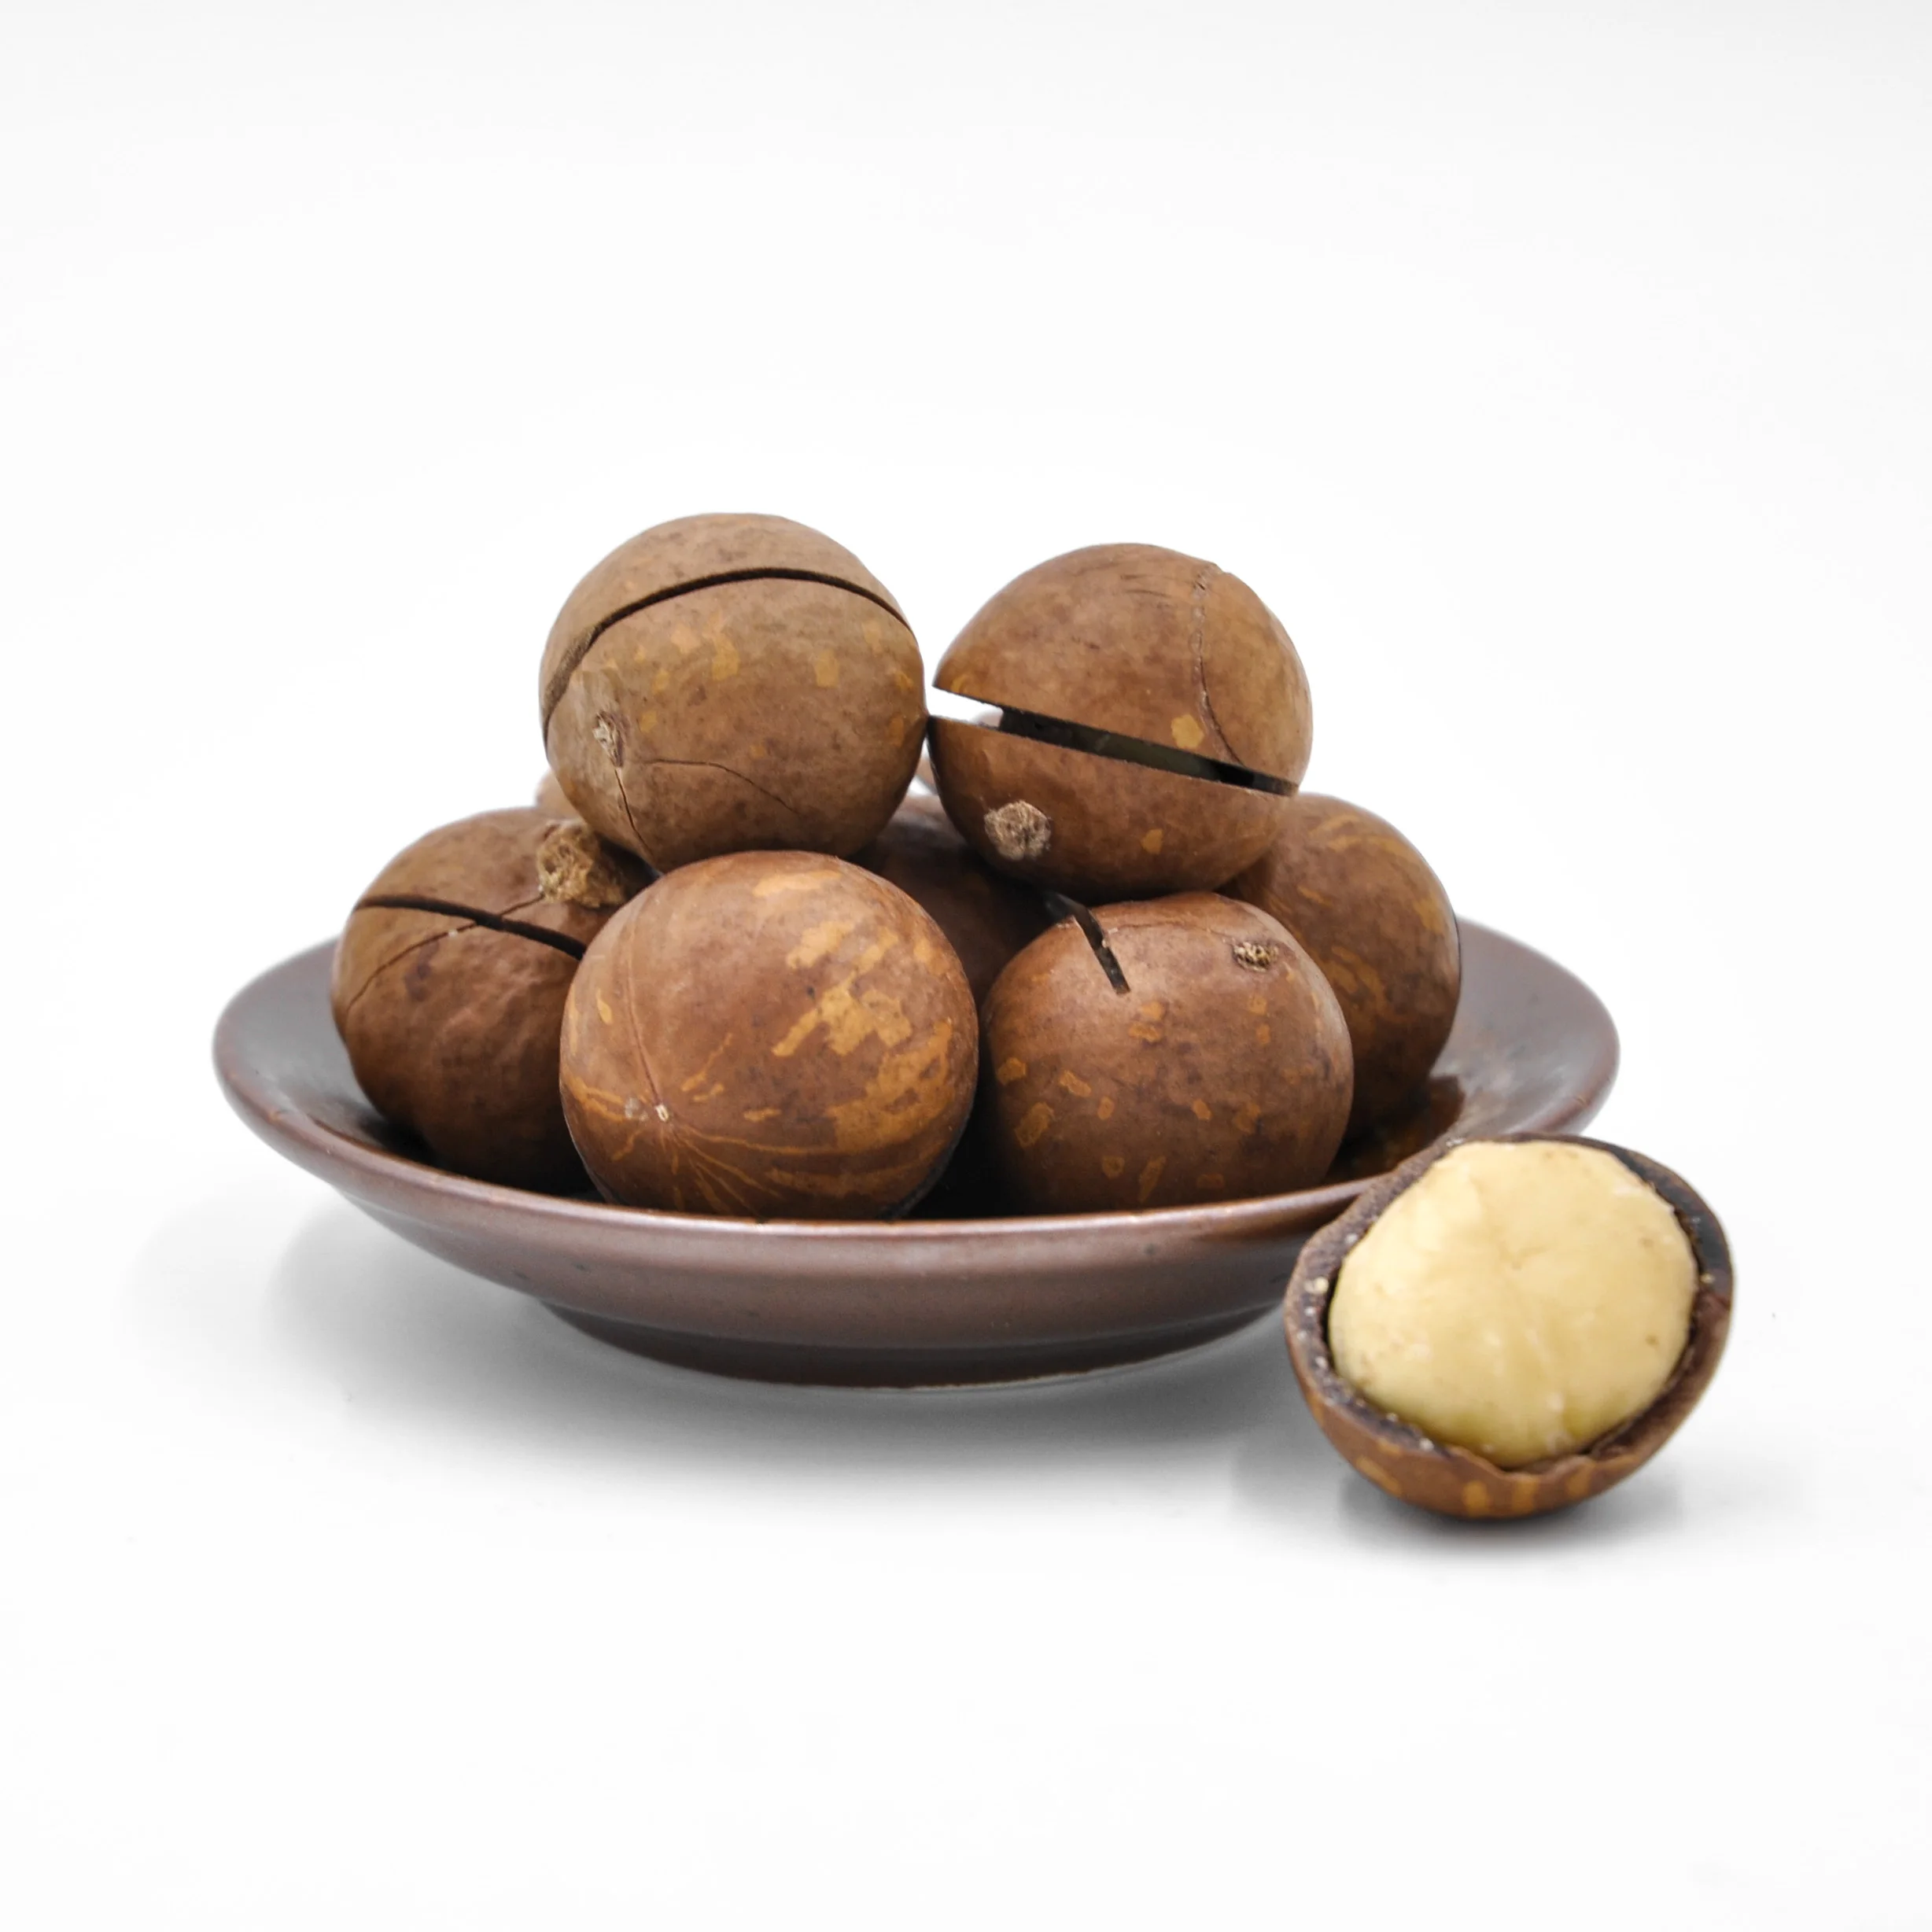 Wholesale Macadamia Nuts Factory Price Top grade Raw Macadamia Nuts